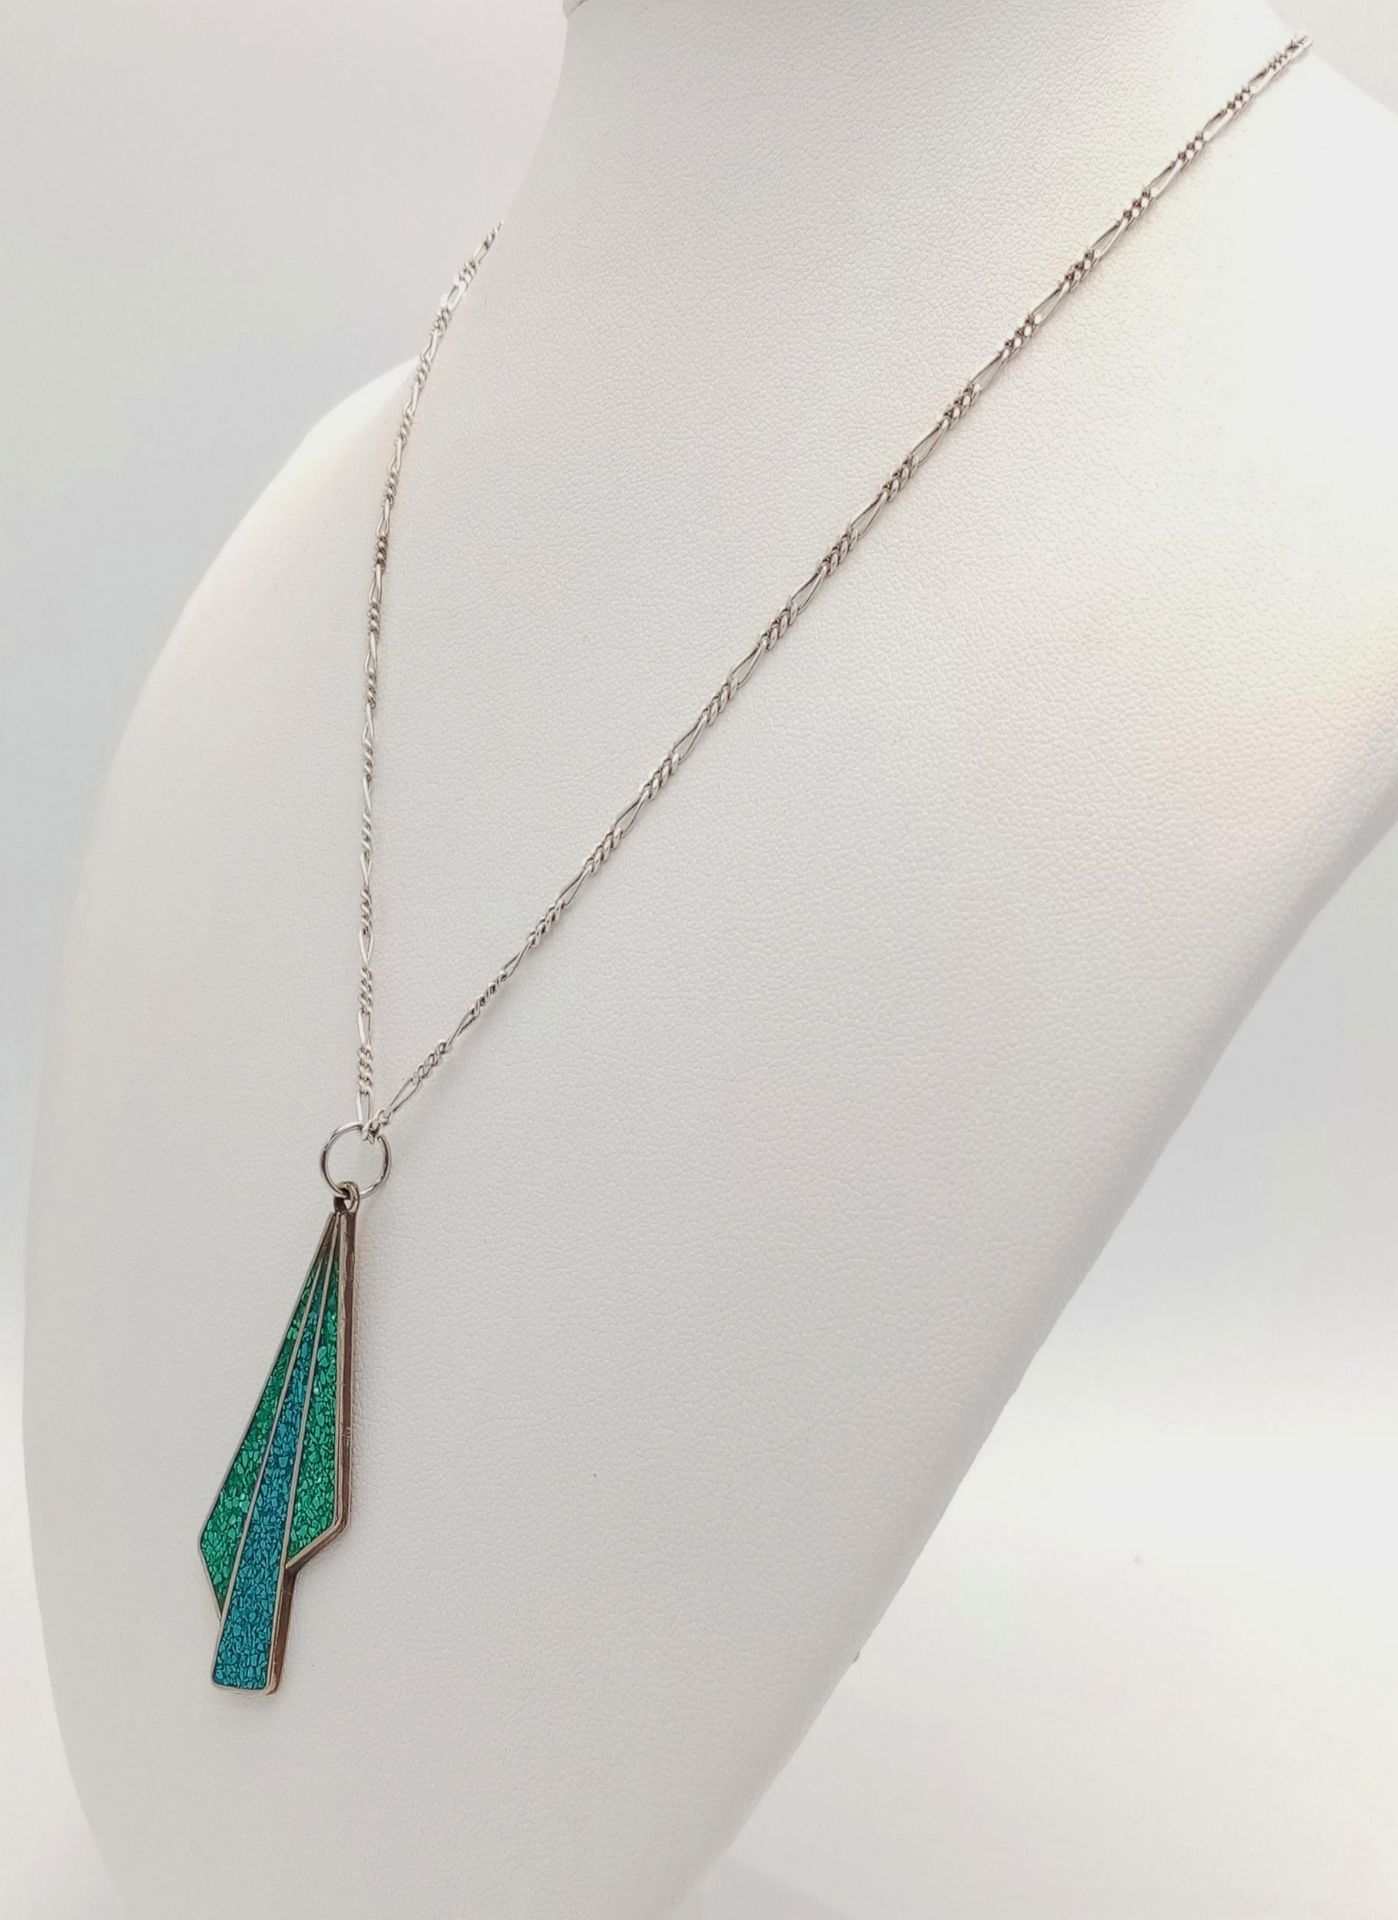 A Vintage Alpaca Turquoise Set Sterling Silver Necklace. 40cm Length. Pendant Measures 5cm Length. - Bild 2 aus 6